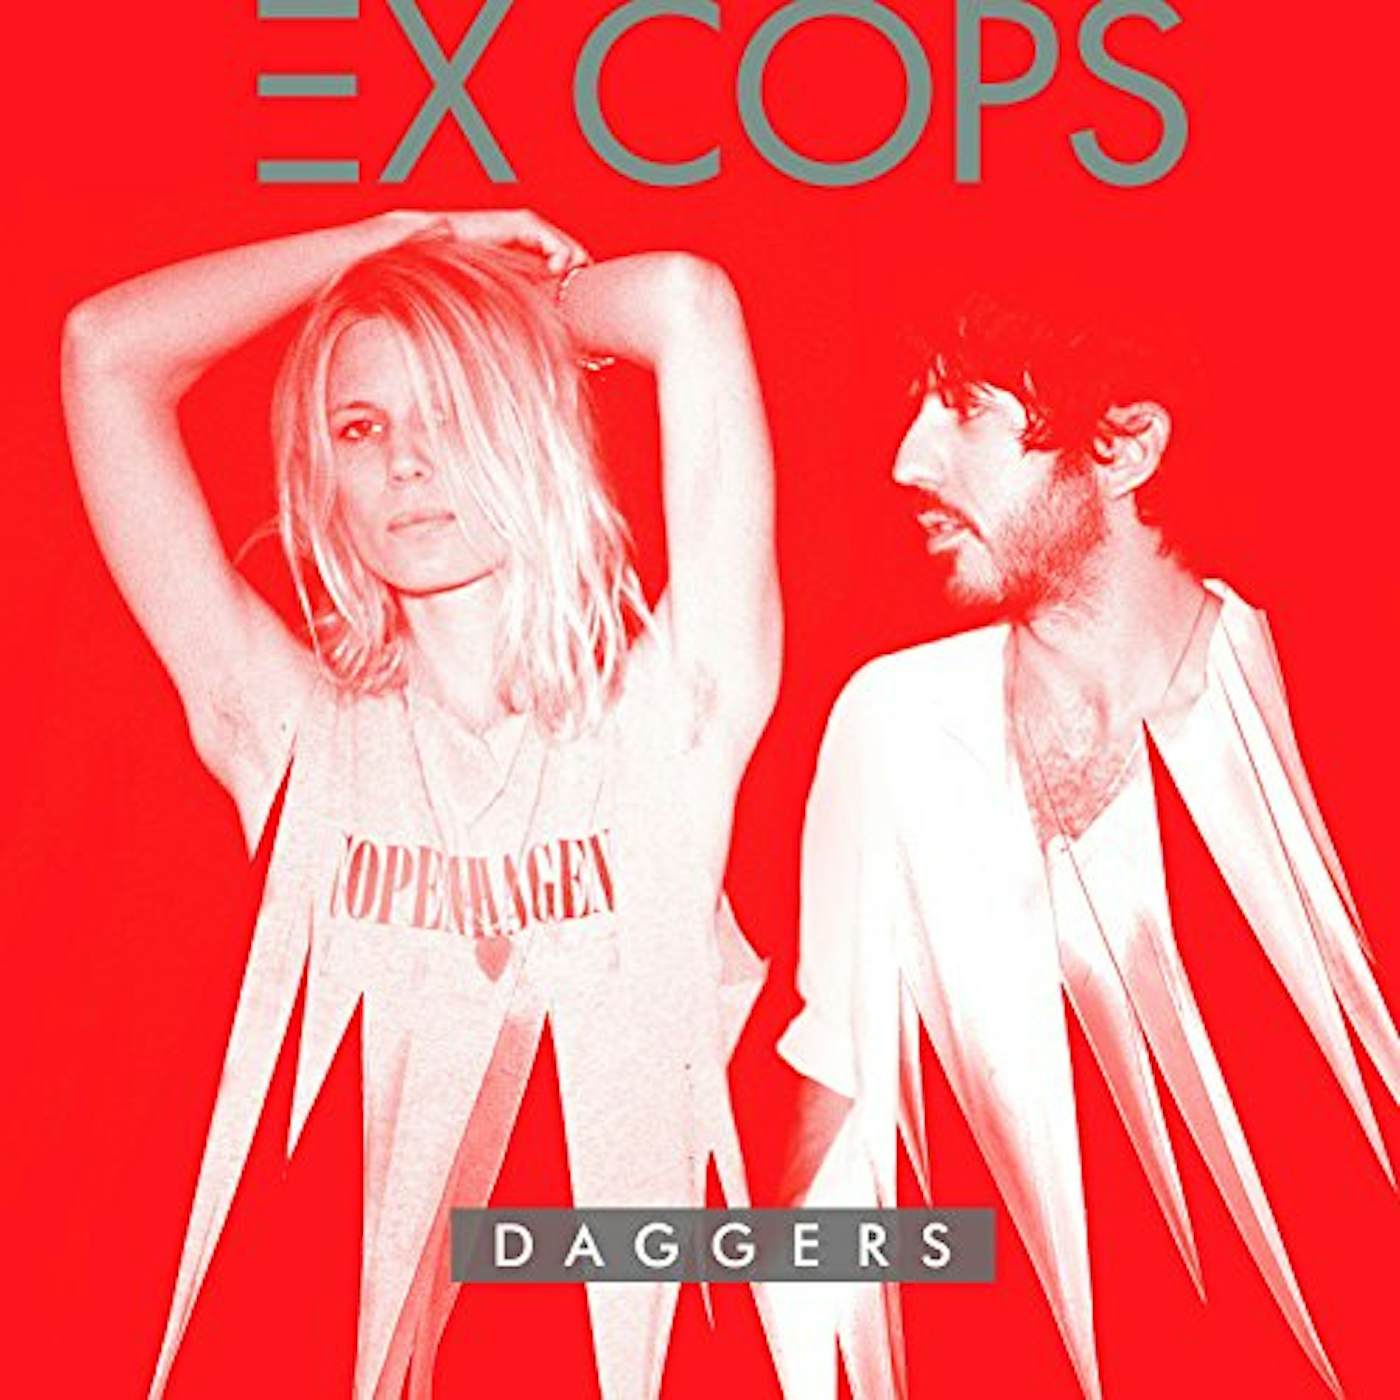 Ex Cops Daggers Vinyl Record